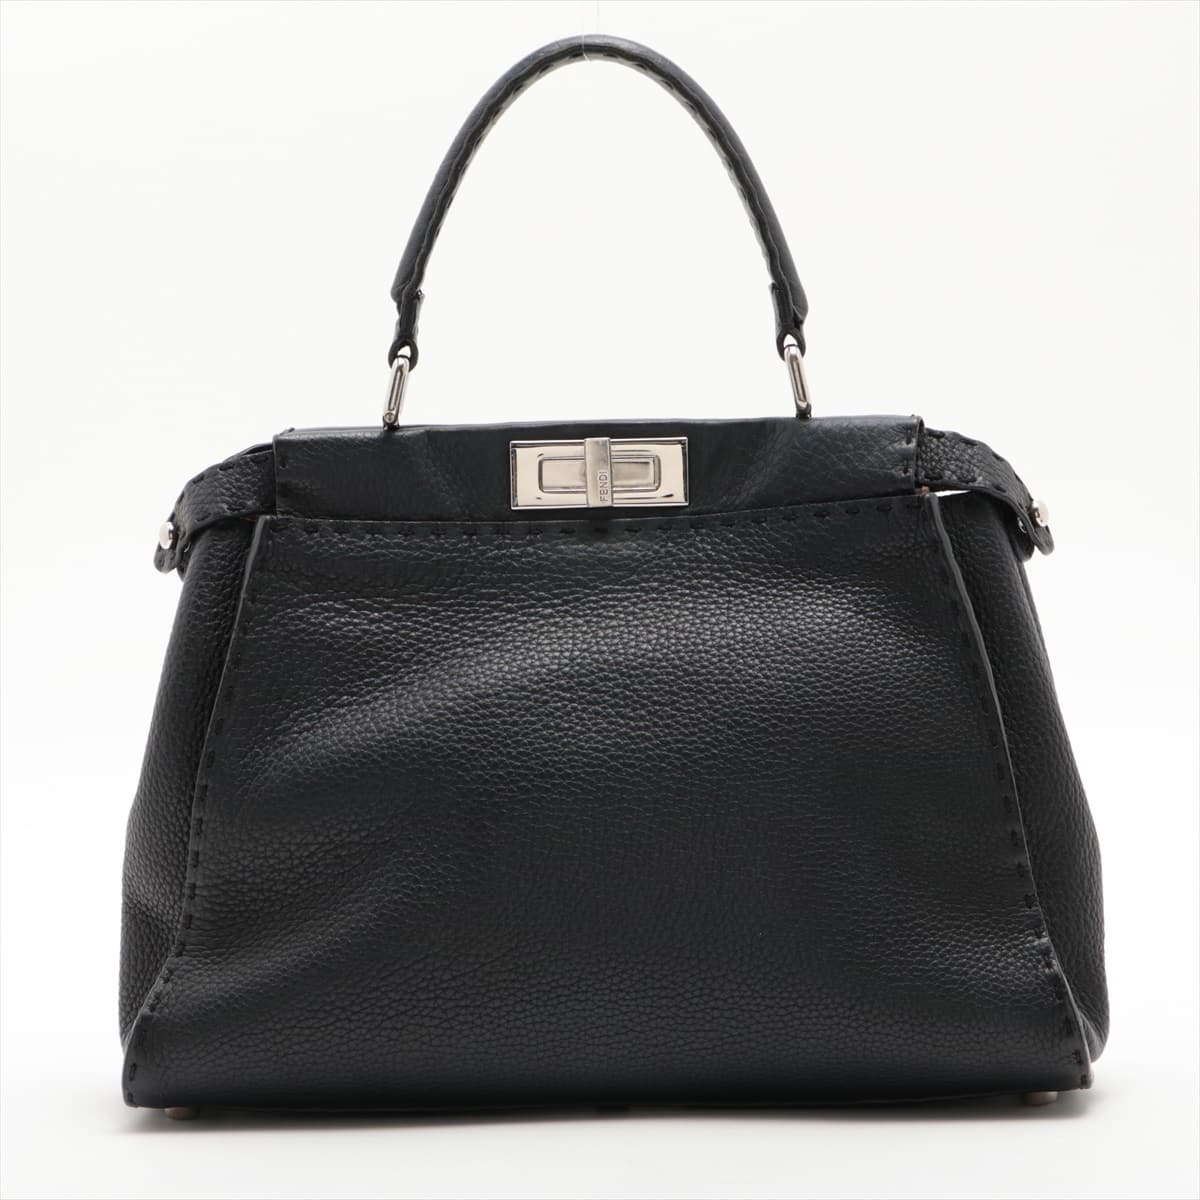 Fendi PEEKABOO REGULAR Selleria Leather Hand bag Black 8BN226 Turn lock loose